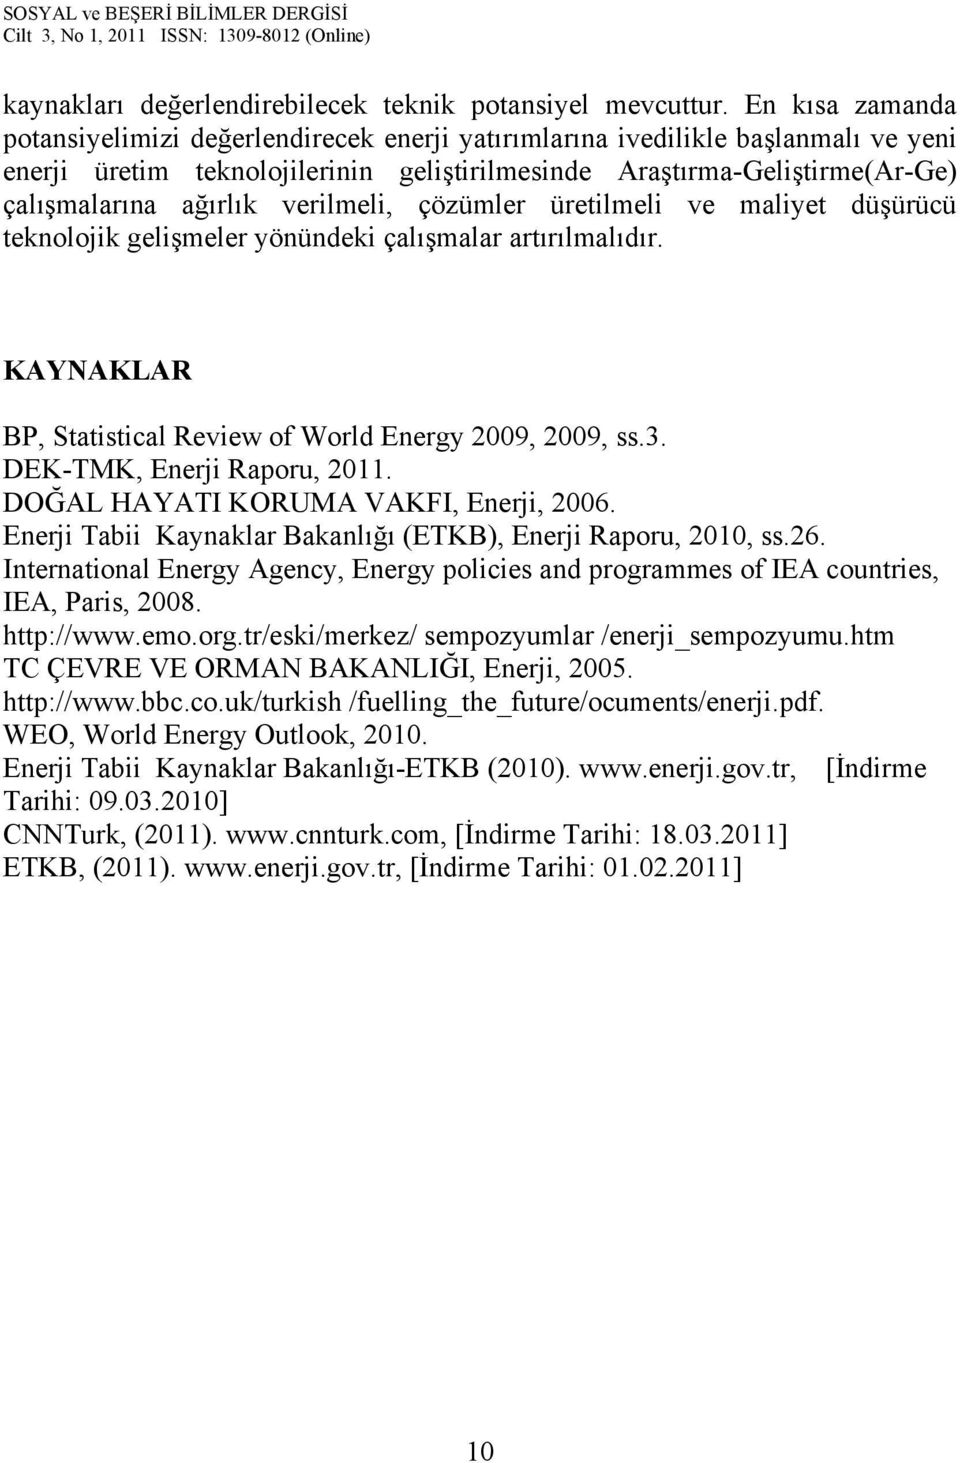 verilmeli, çözümler üretilmeli ve maliyet düşürücü teknolojik gelişmeler yönündeki çalışmalar artırılmalıdır. KAYNAKLAR BP, Statistical Review of World Energy 2009, 2009, ss.3.